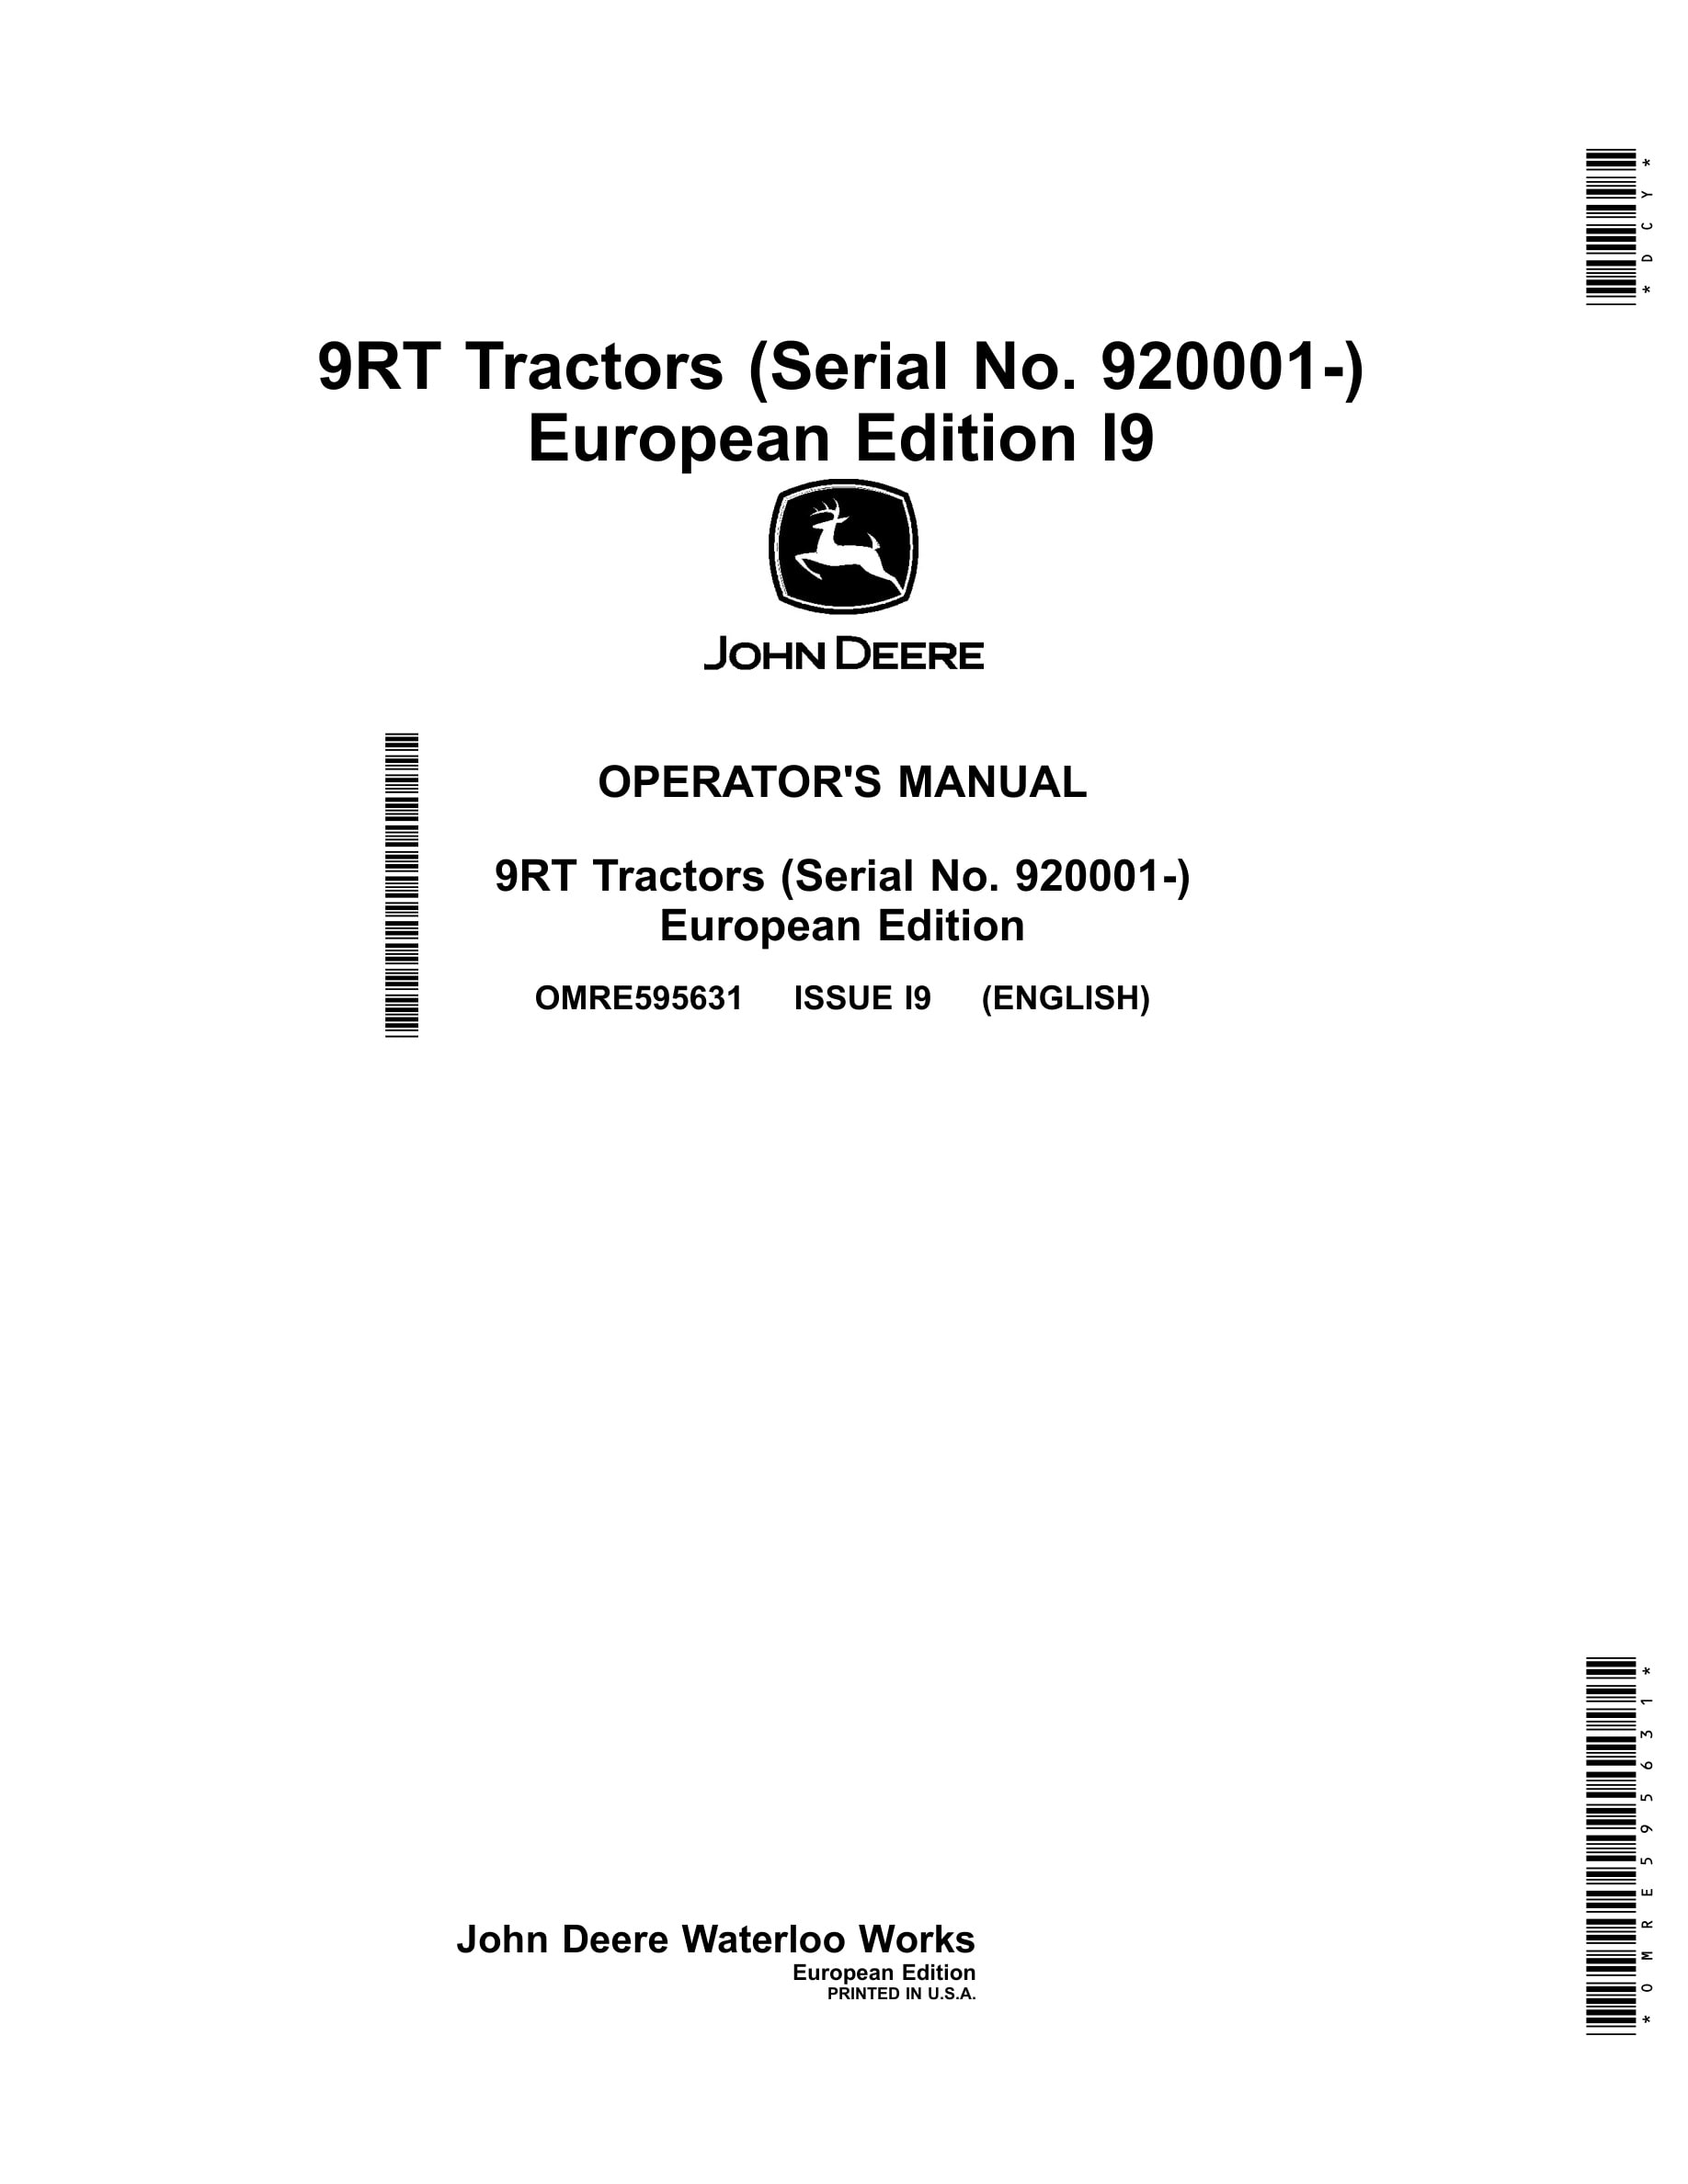 John Deere 9rt Tractors Operator Manuals OMRE595631-1